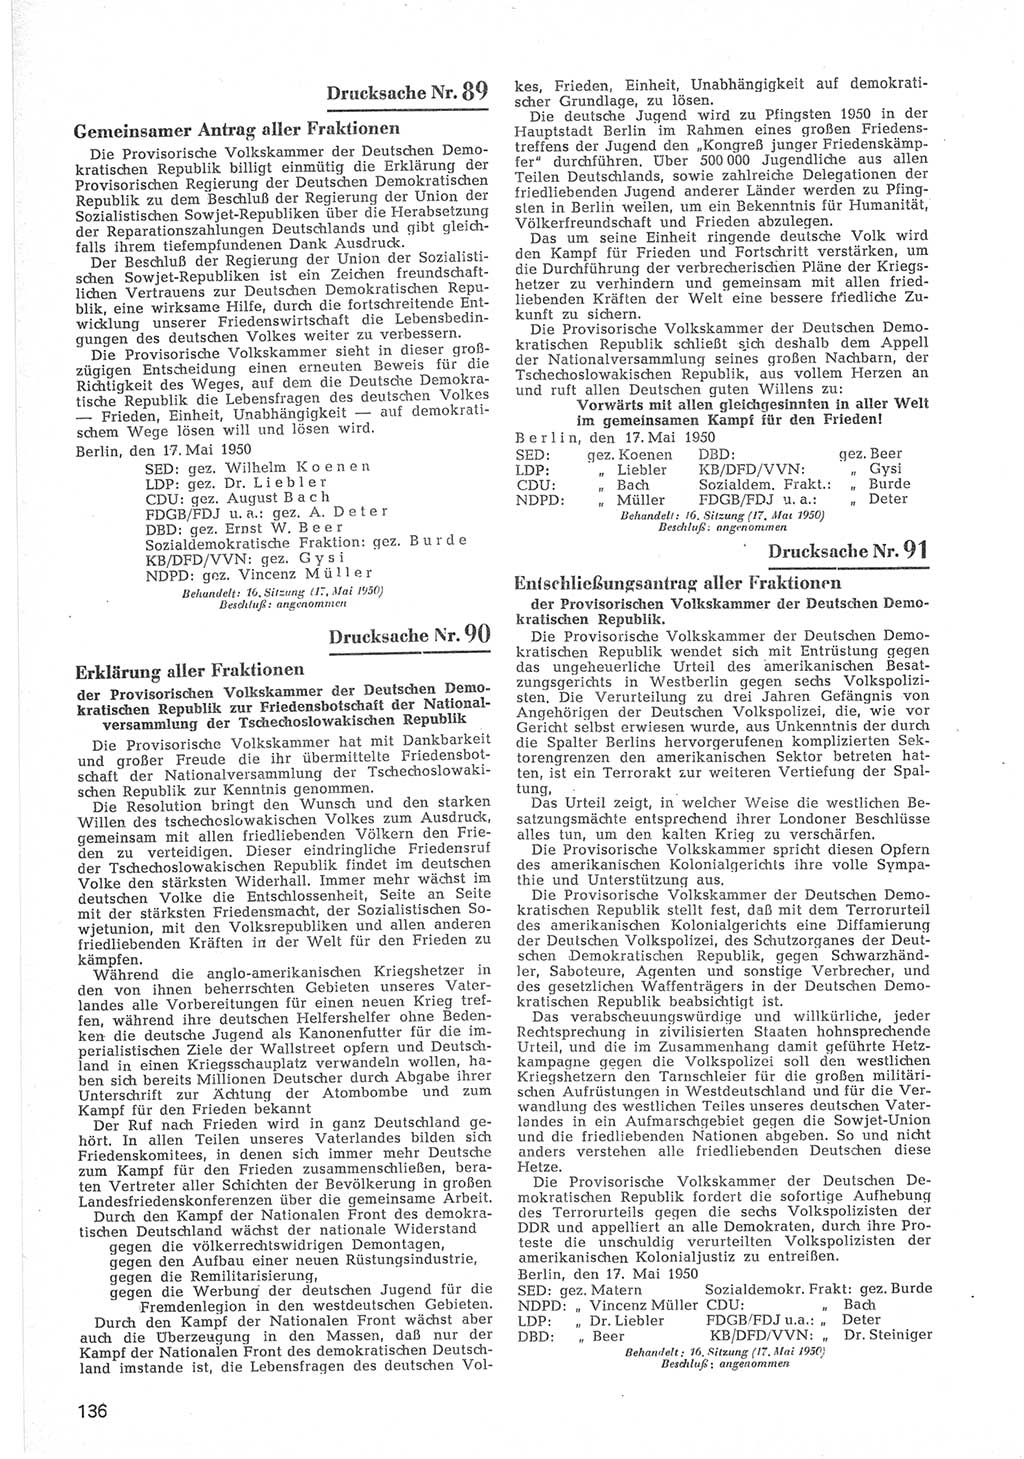 Provisorische Volkskammer (VK) der Deutschen Demokratischen Republik (DDR) 1949-1950, Dokument 738 (Prov. VK DDR 1949-1950, Dok. 738)